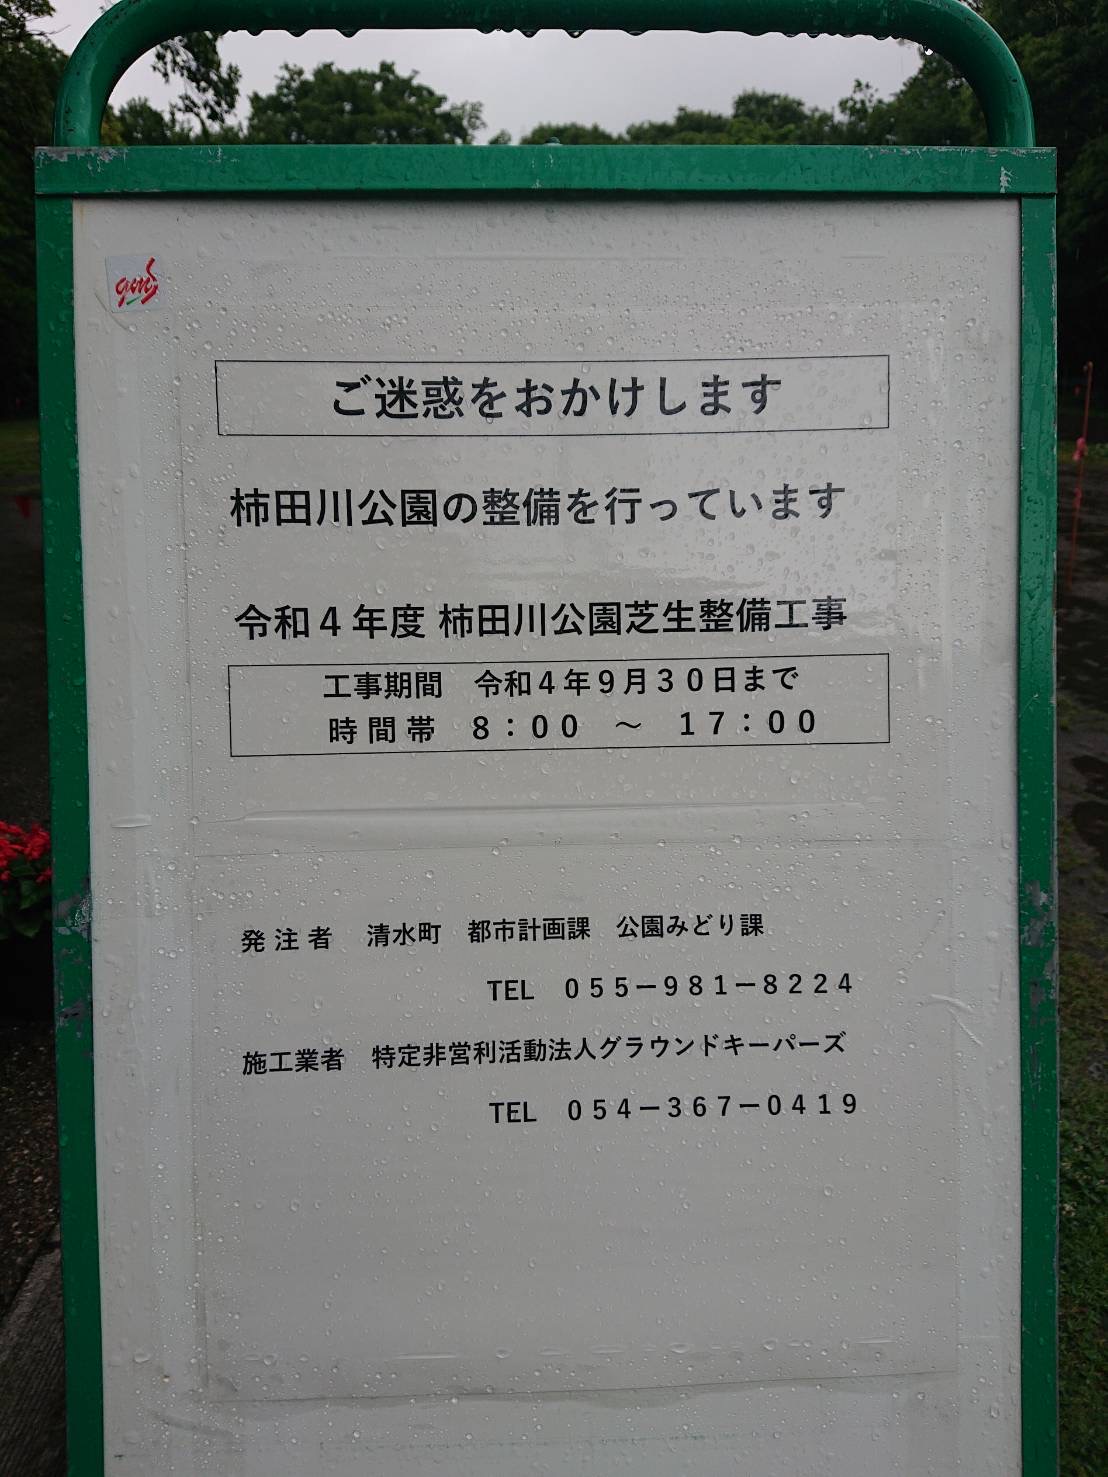 柿田川公園芝生整備工事のお知らせ